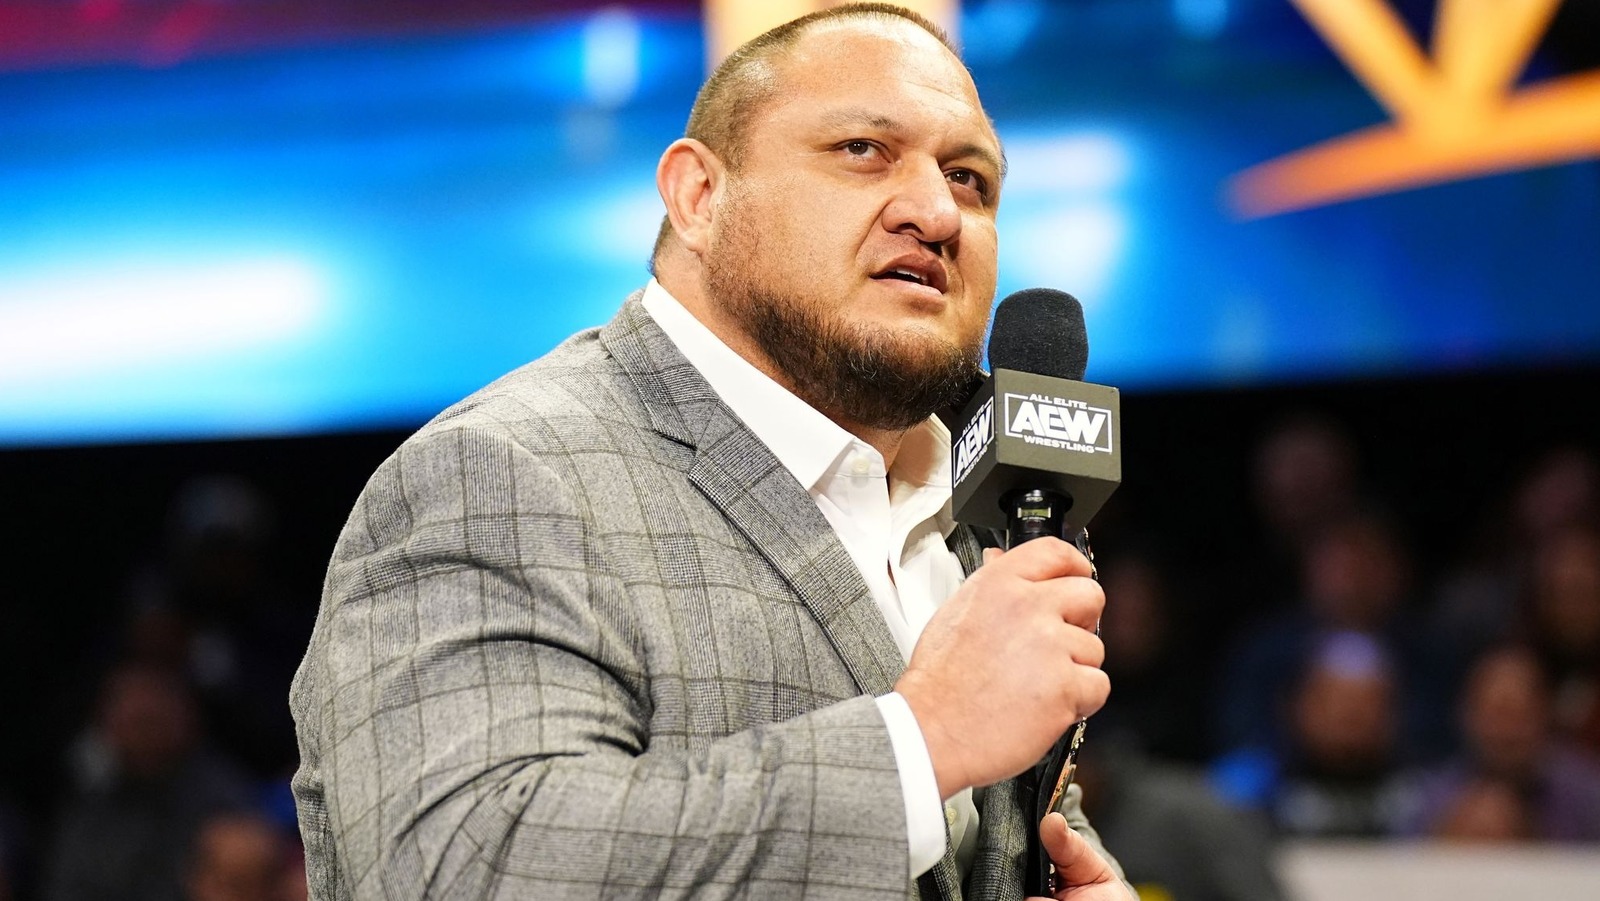 El campeón mundial de AEW, Samoa Joe, explica la negatividad del fandom en línea a pesar del auge de la lucha libre